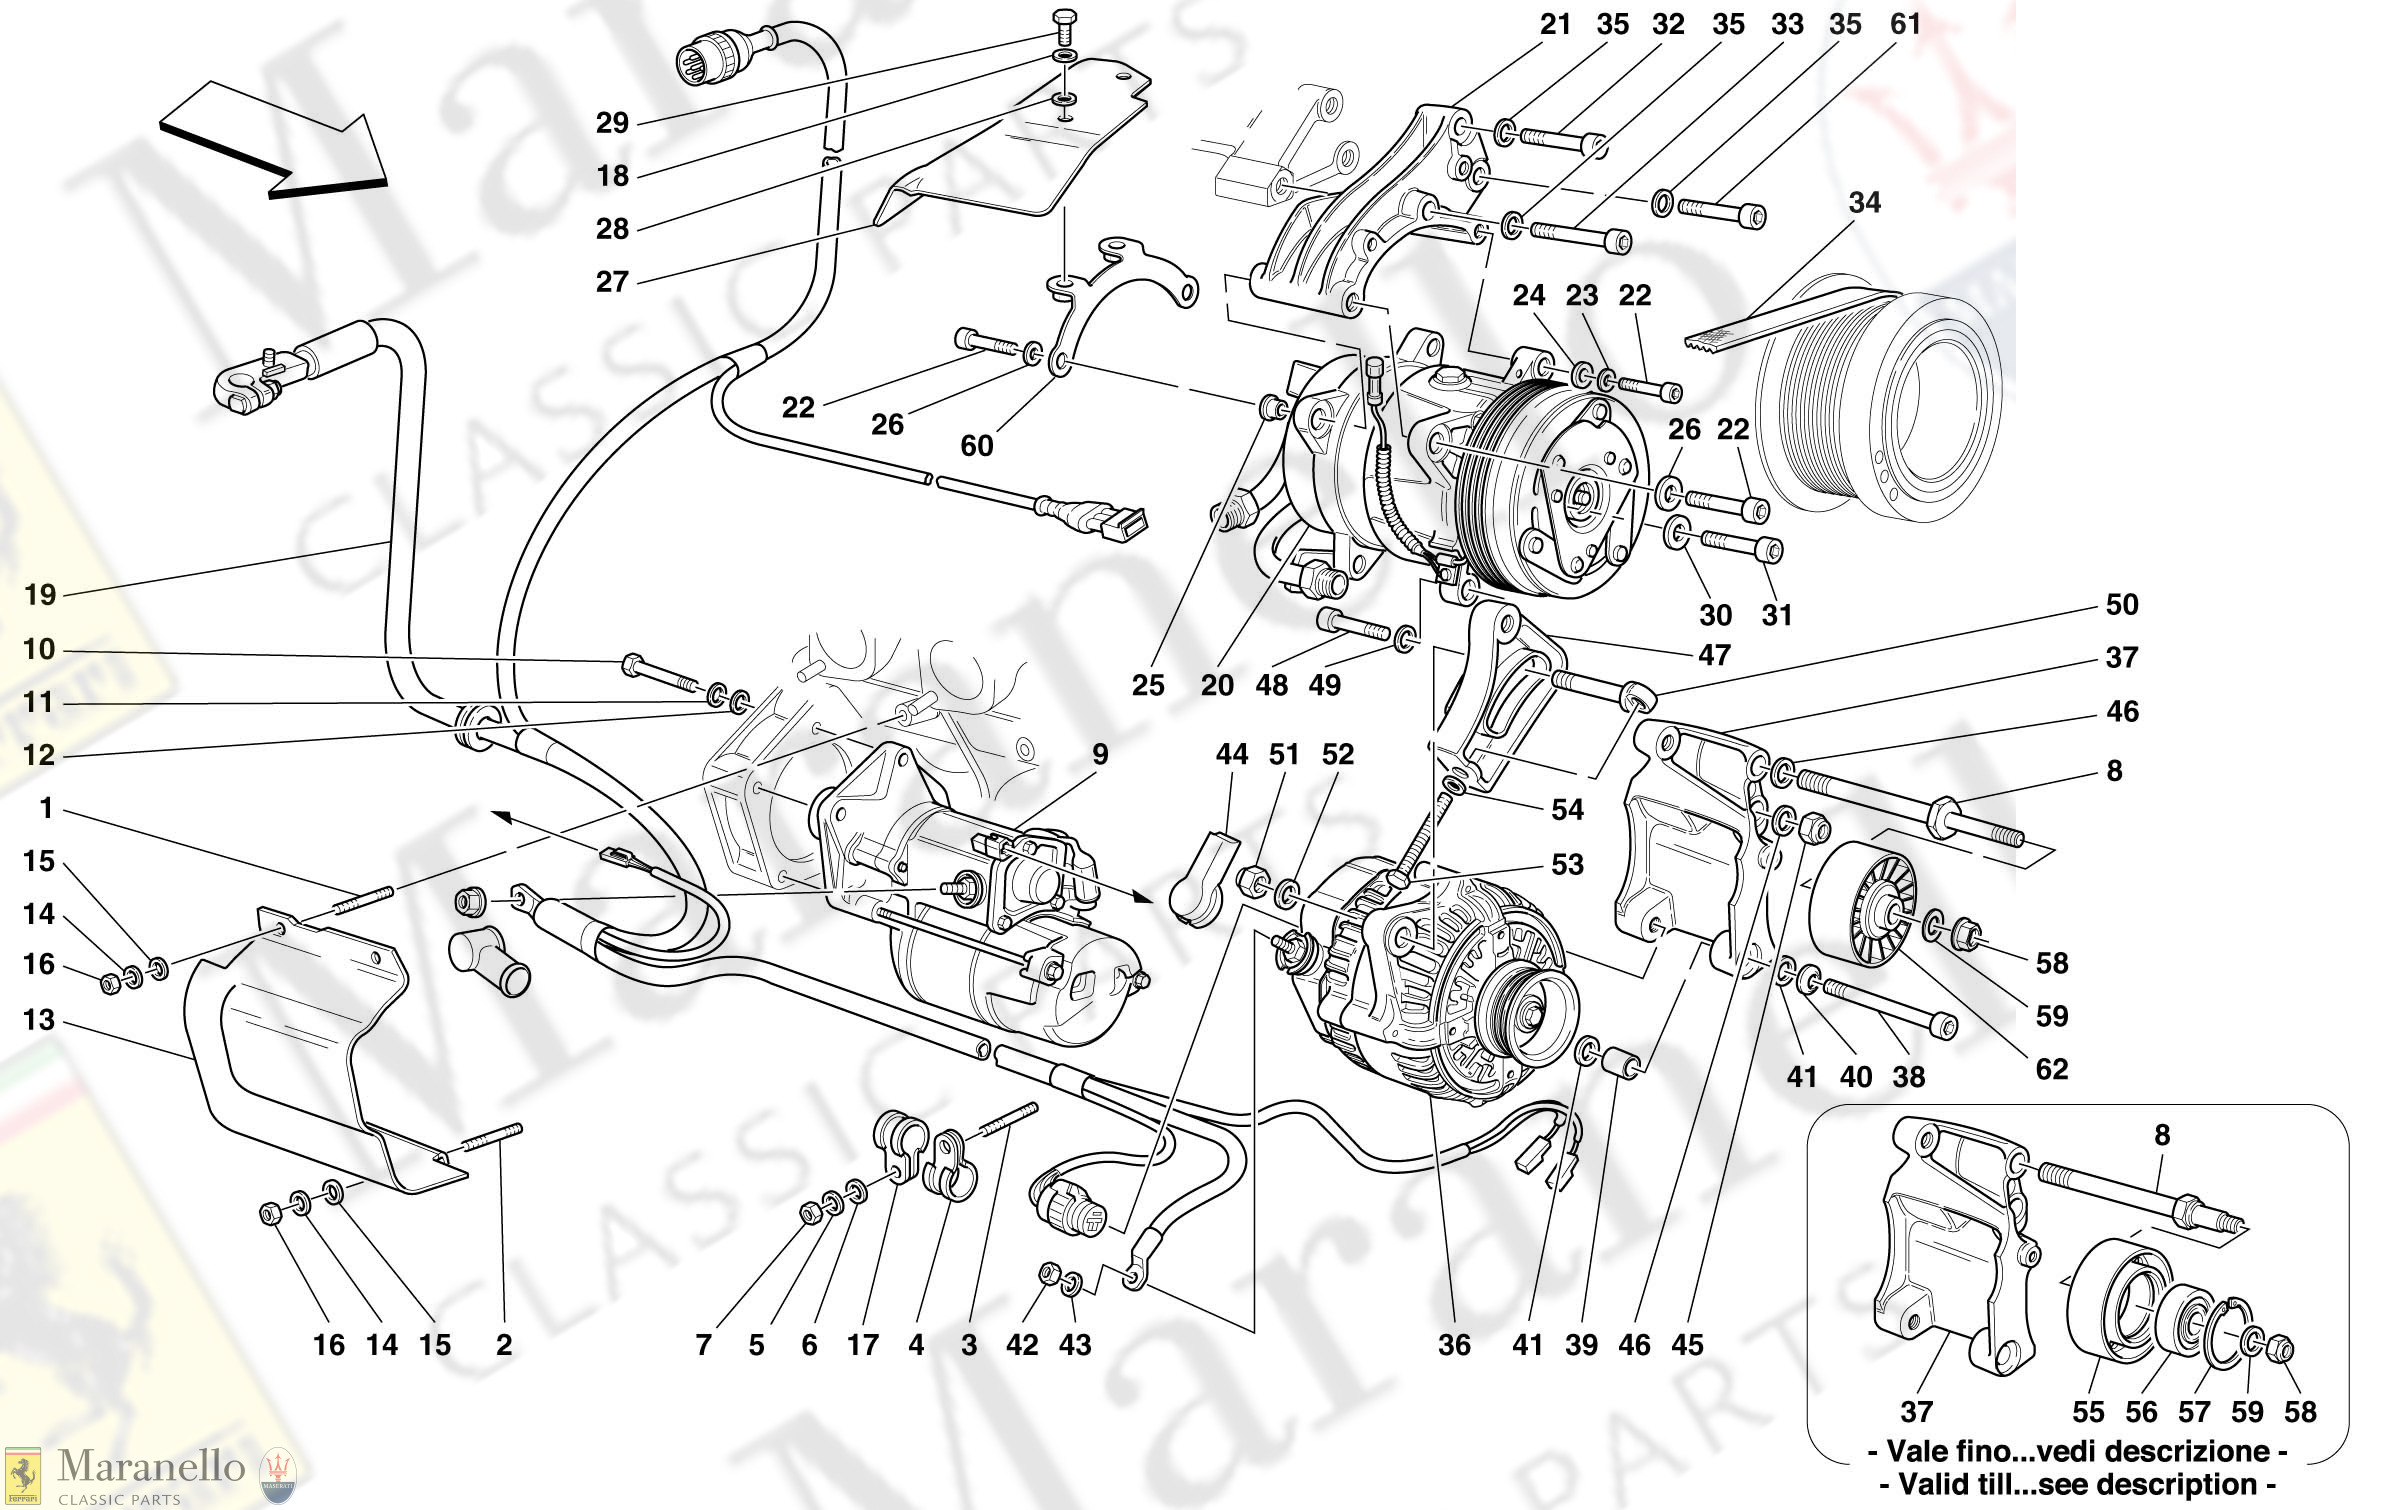 066 - Alternator - Starting Motor - Air Conditioning Compressor